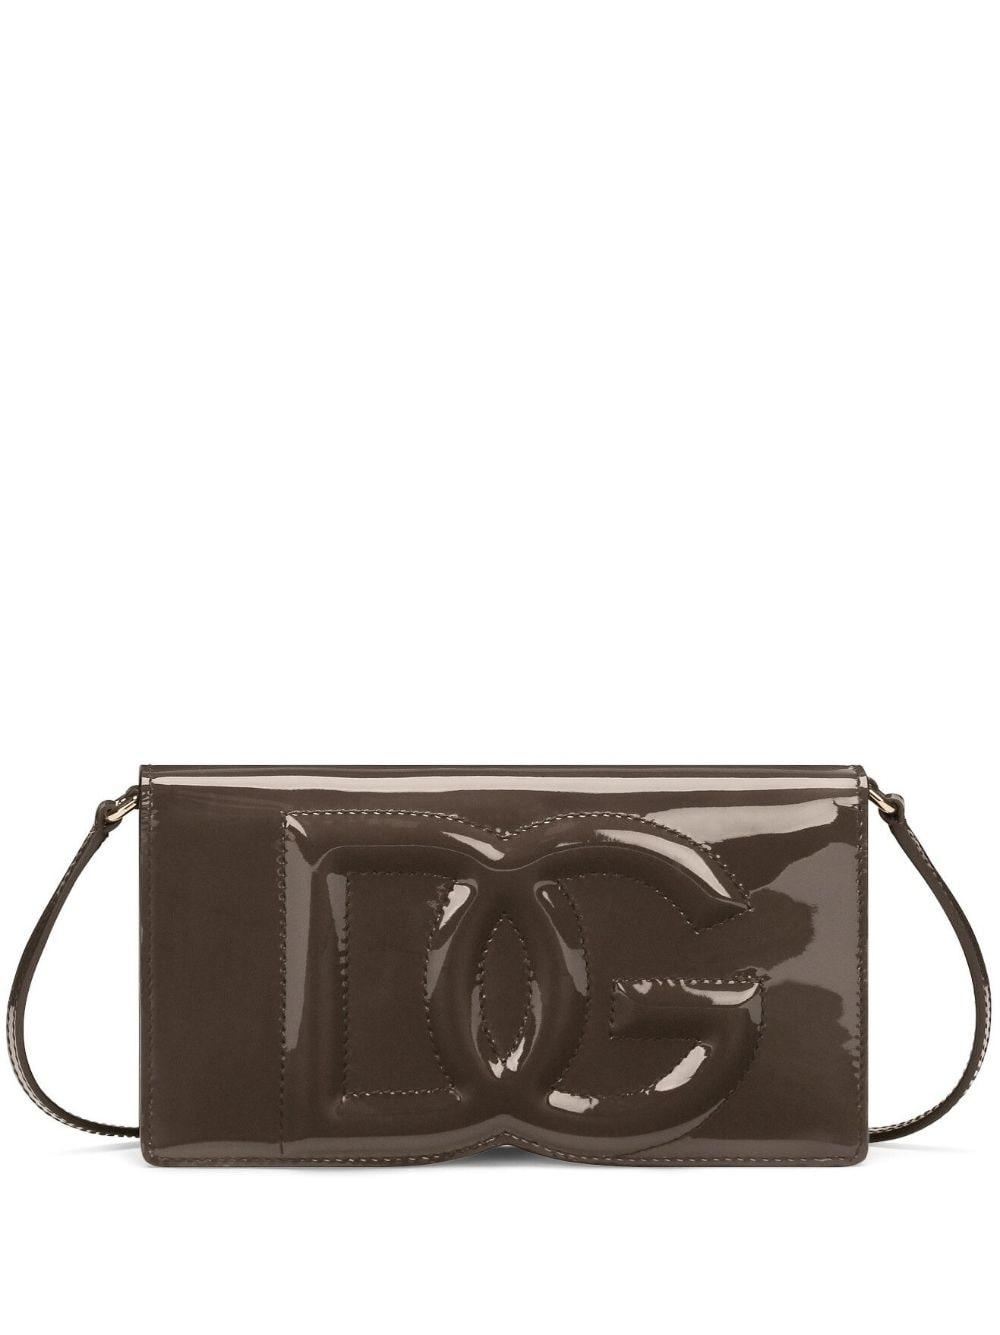 Dolce & Gabbana Dg-logo Patent-leather Shoulder Bag in Brown